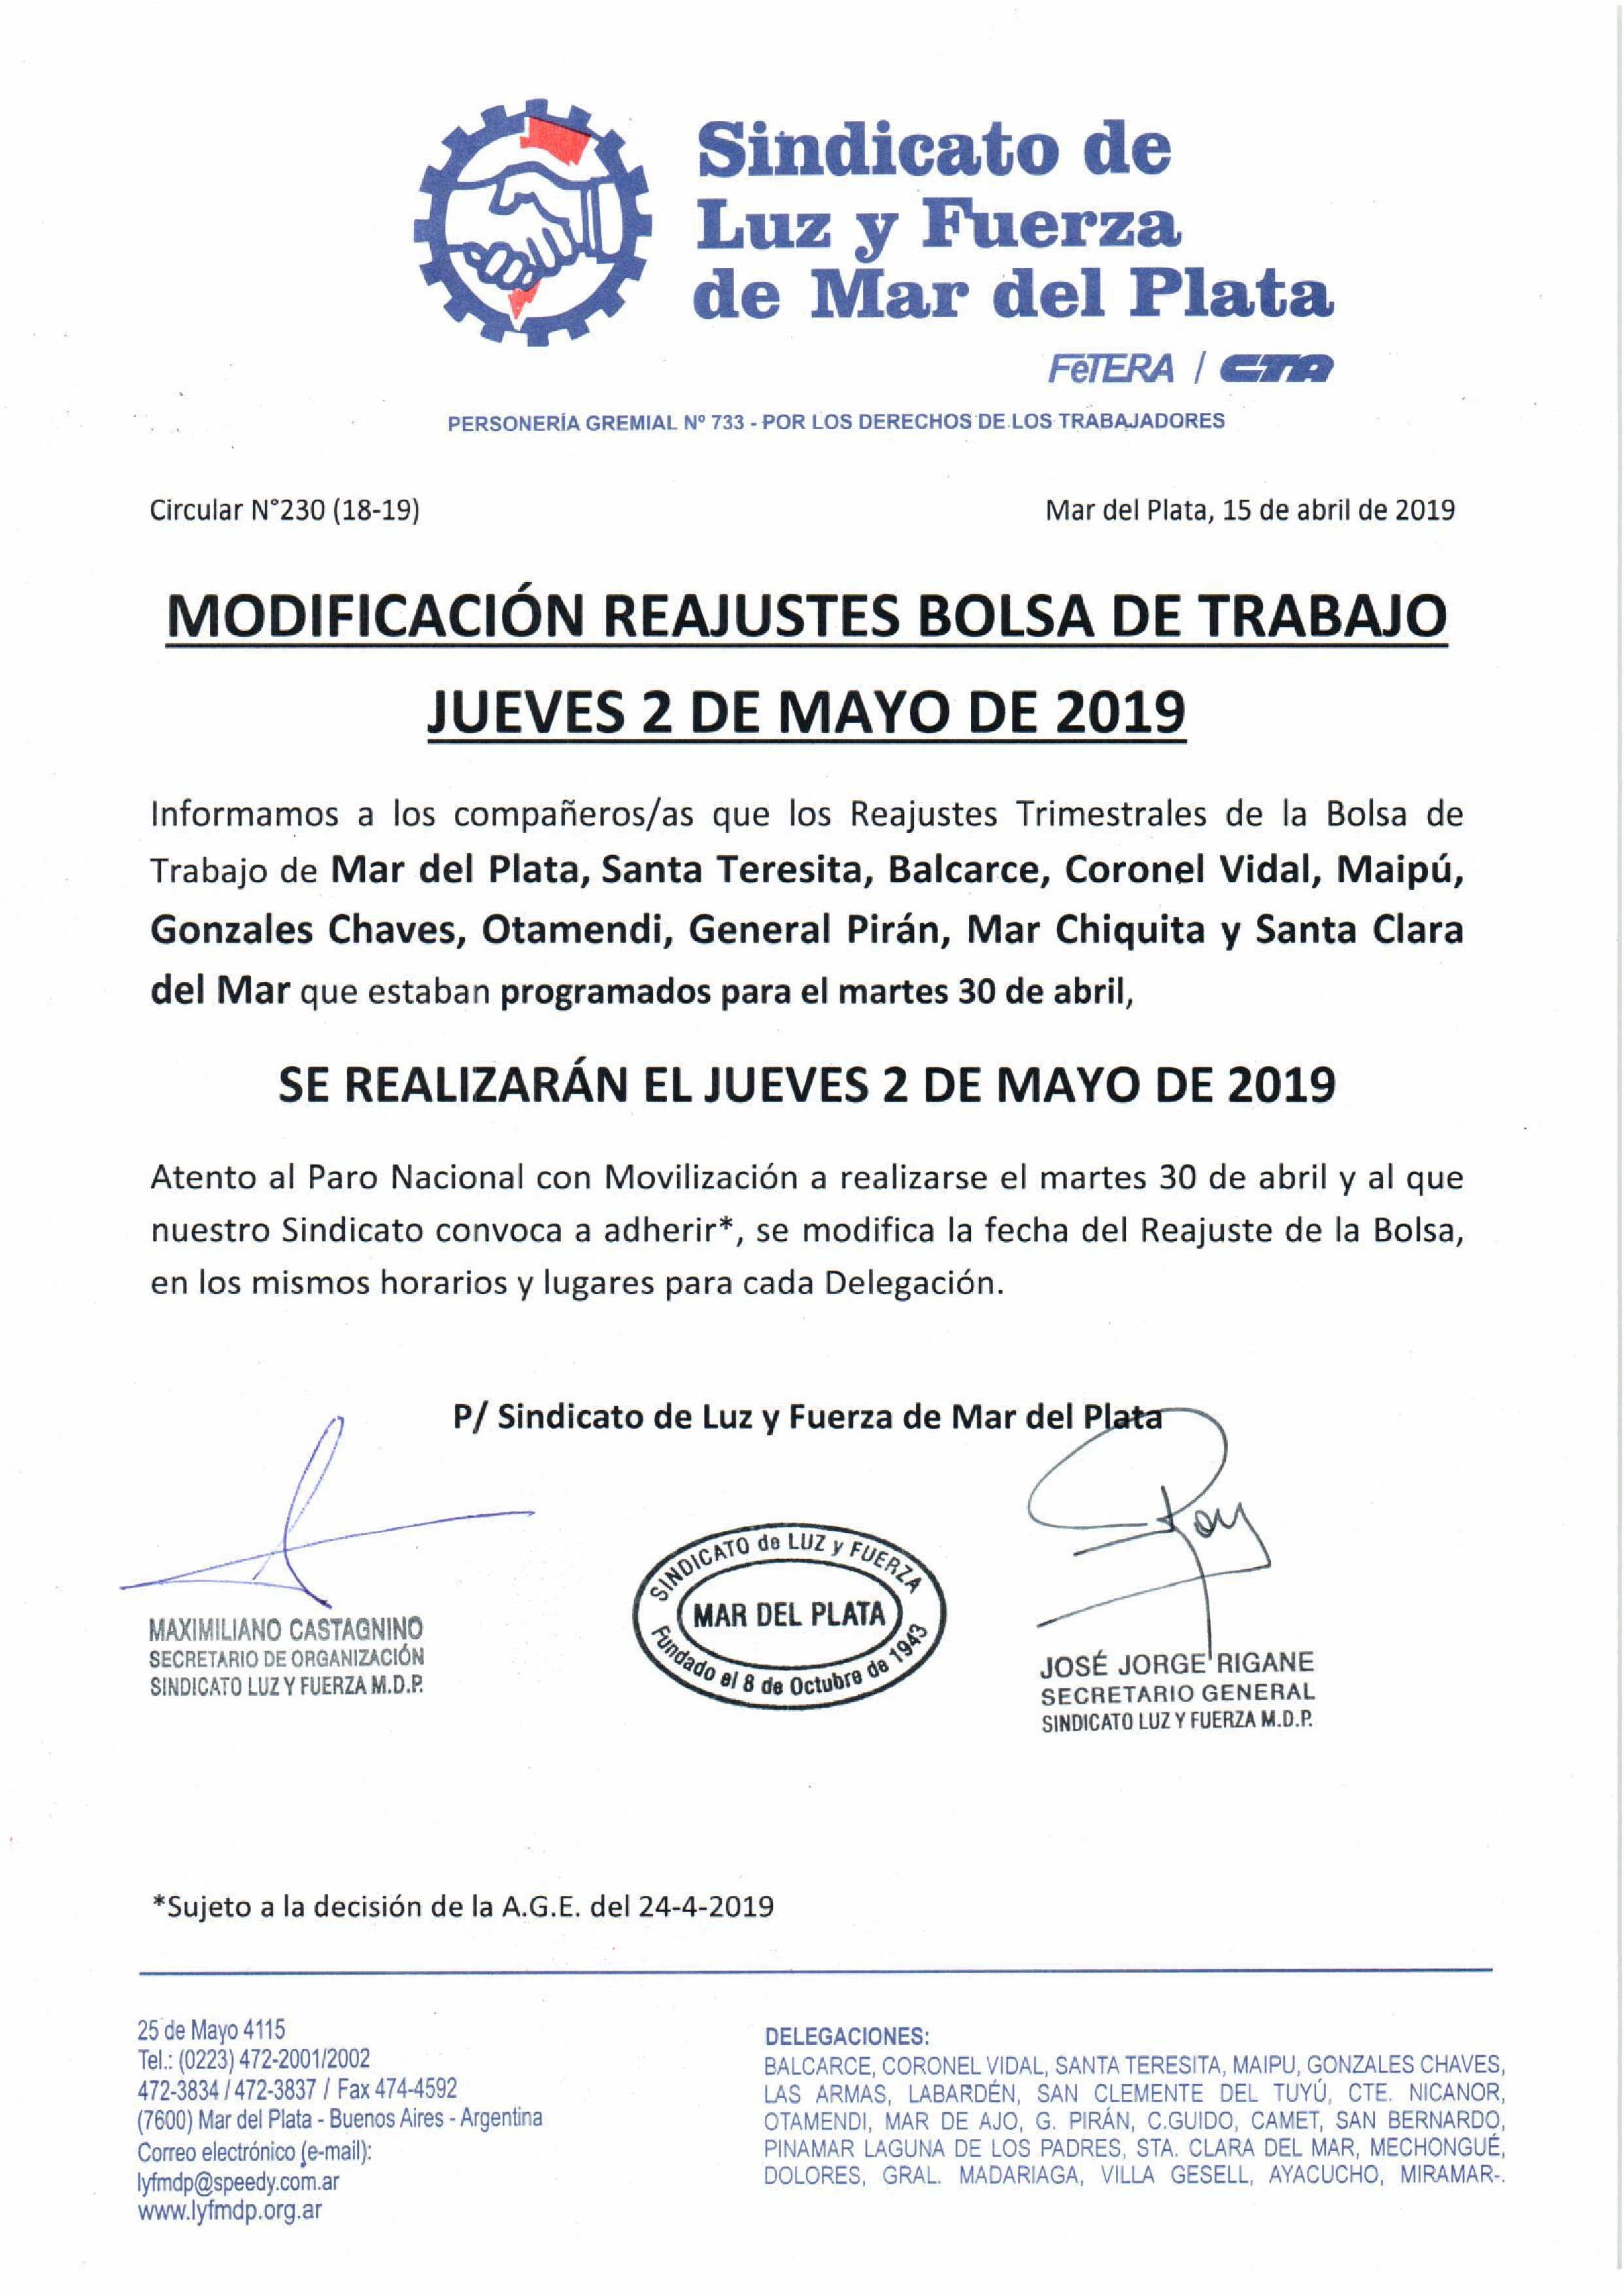 MODIFICACIÓN REAJUSTES BOLSA DE TRABAJO: JUEVES 2 DE MAYO DE 2019